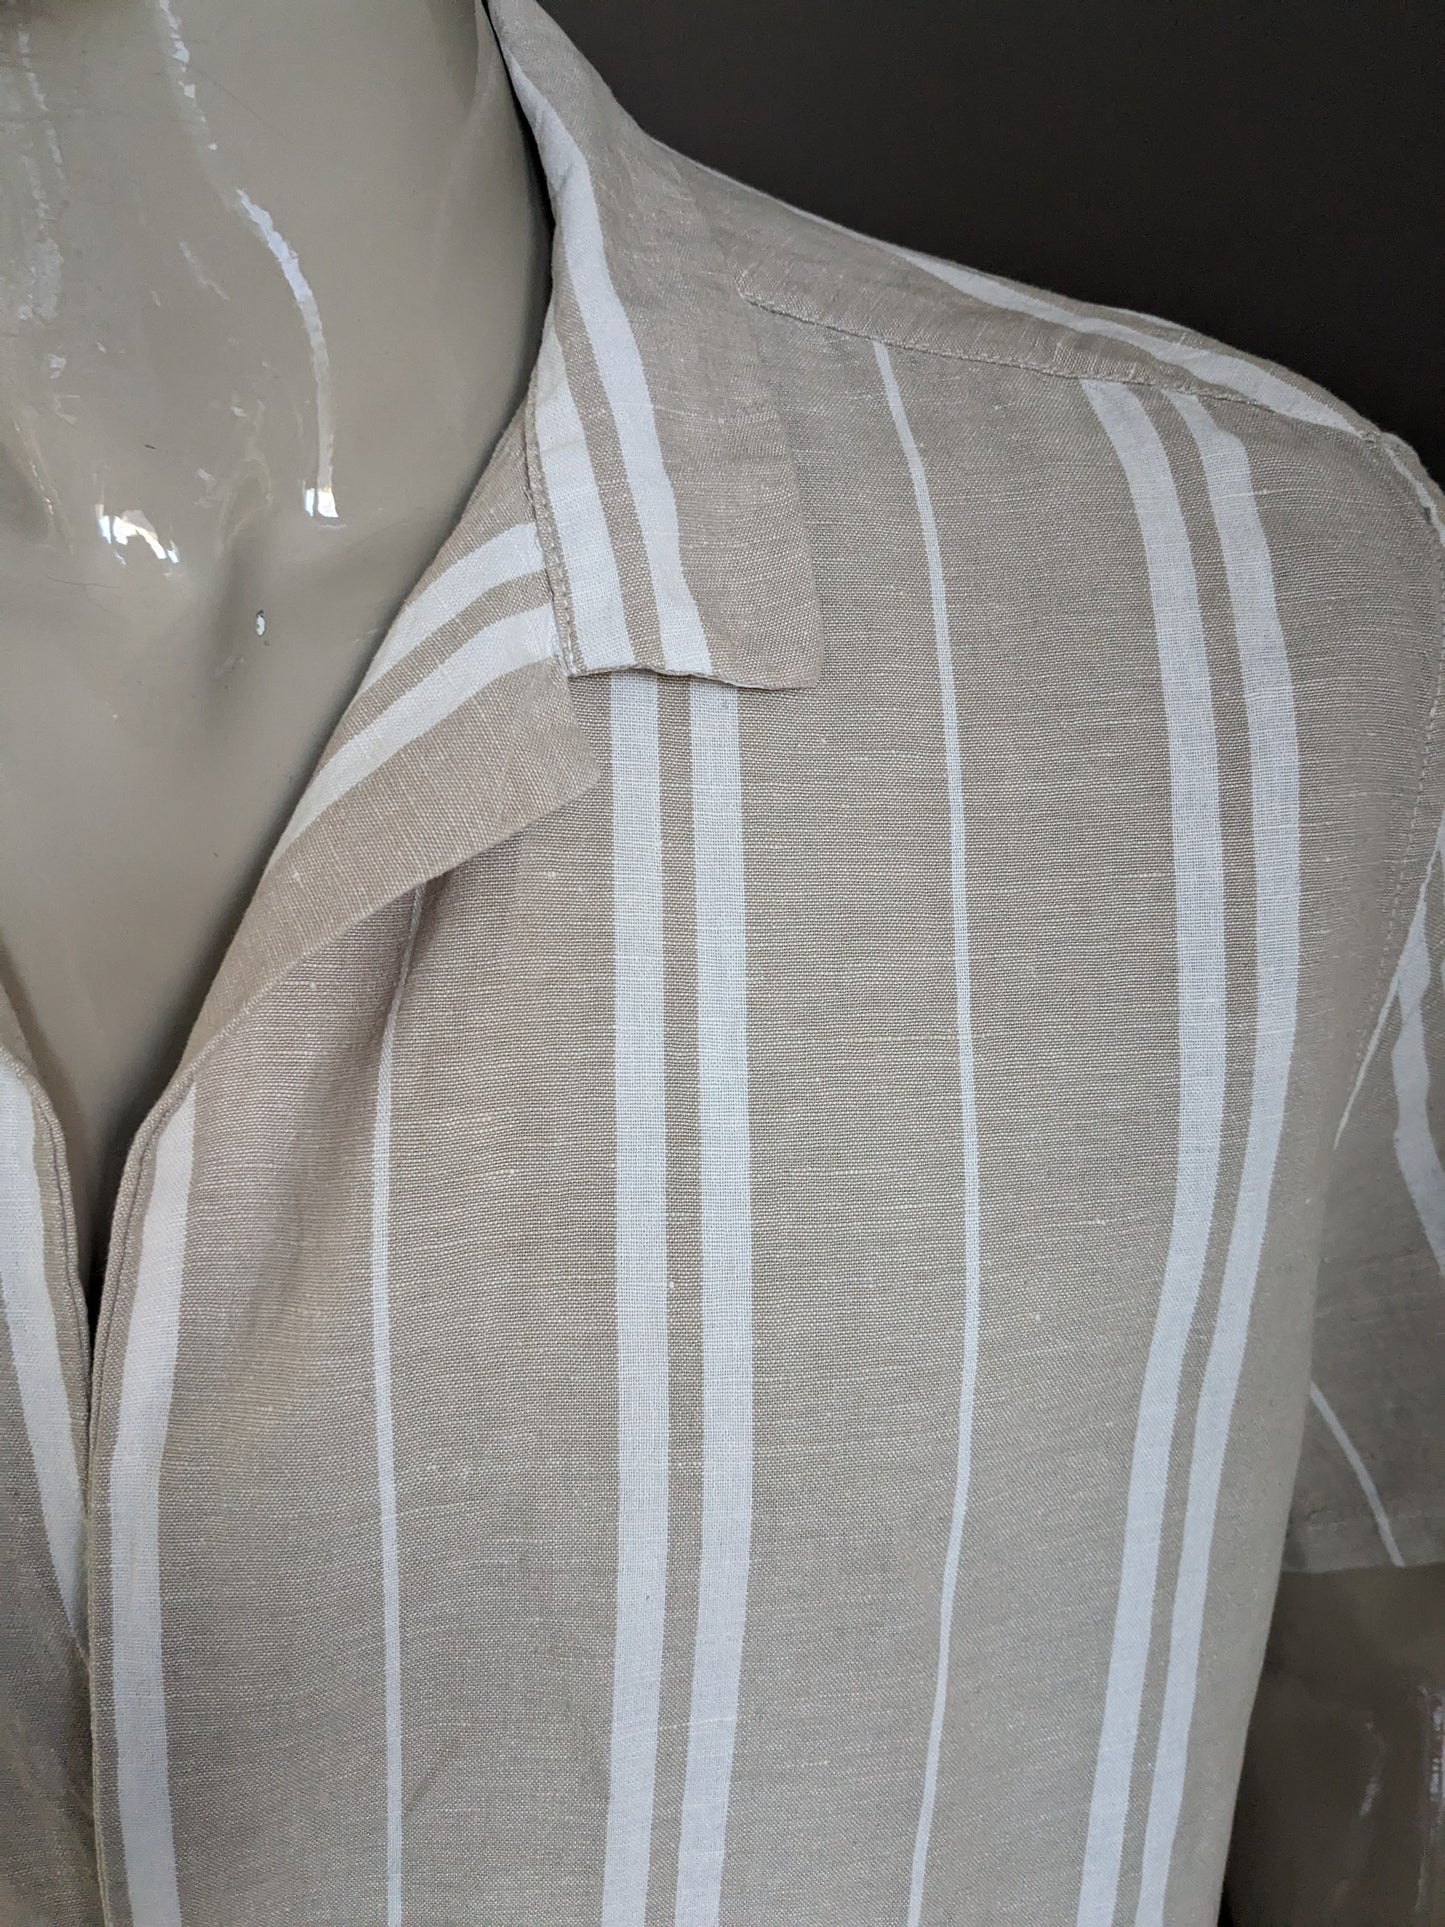 ASOS -Leinenhemd Kurzarm mit 1 Knoten. Beige weiß gestreift. Größe 2xl / xxl. 53% Leinen.